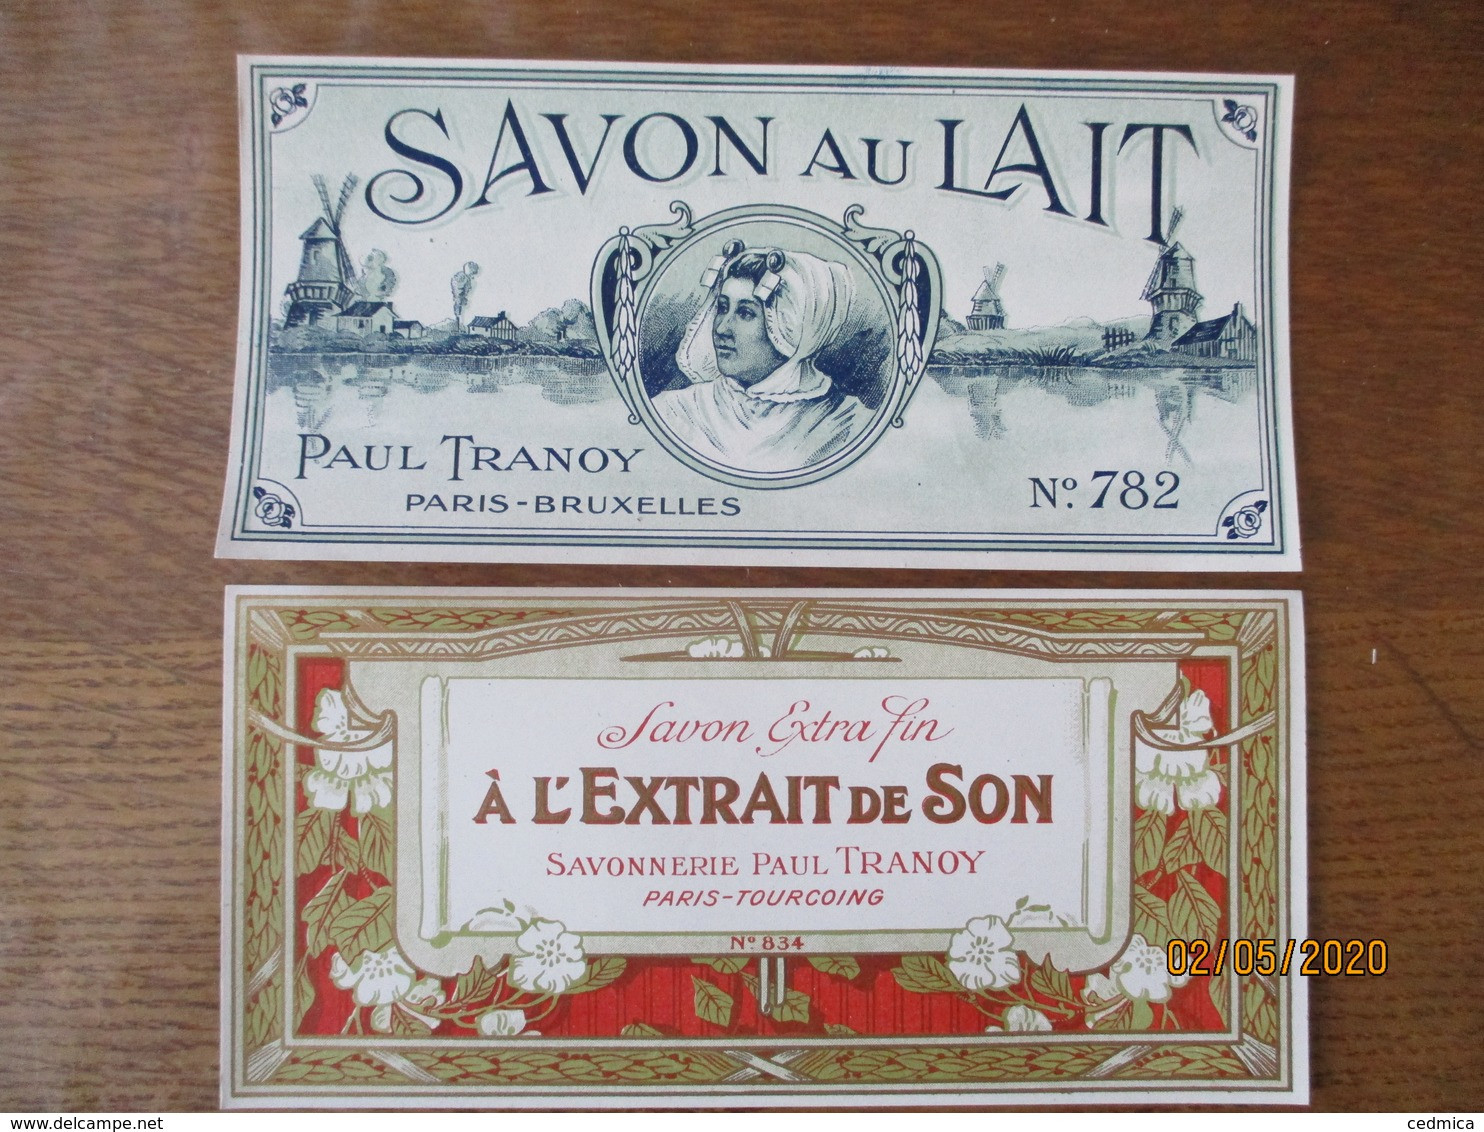 2 ETIQUETTES SAVON AU LAIT PAUL TRANOY PARIS-BRUXELLES ET SAVON A L'EXTRAIT DE SON SAVONNERIE PAUL TRANOY PARIS TOURCOIN - Etiketten